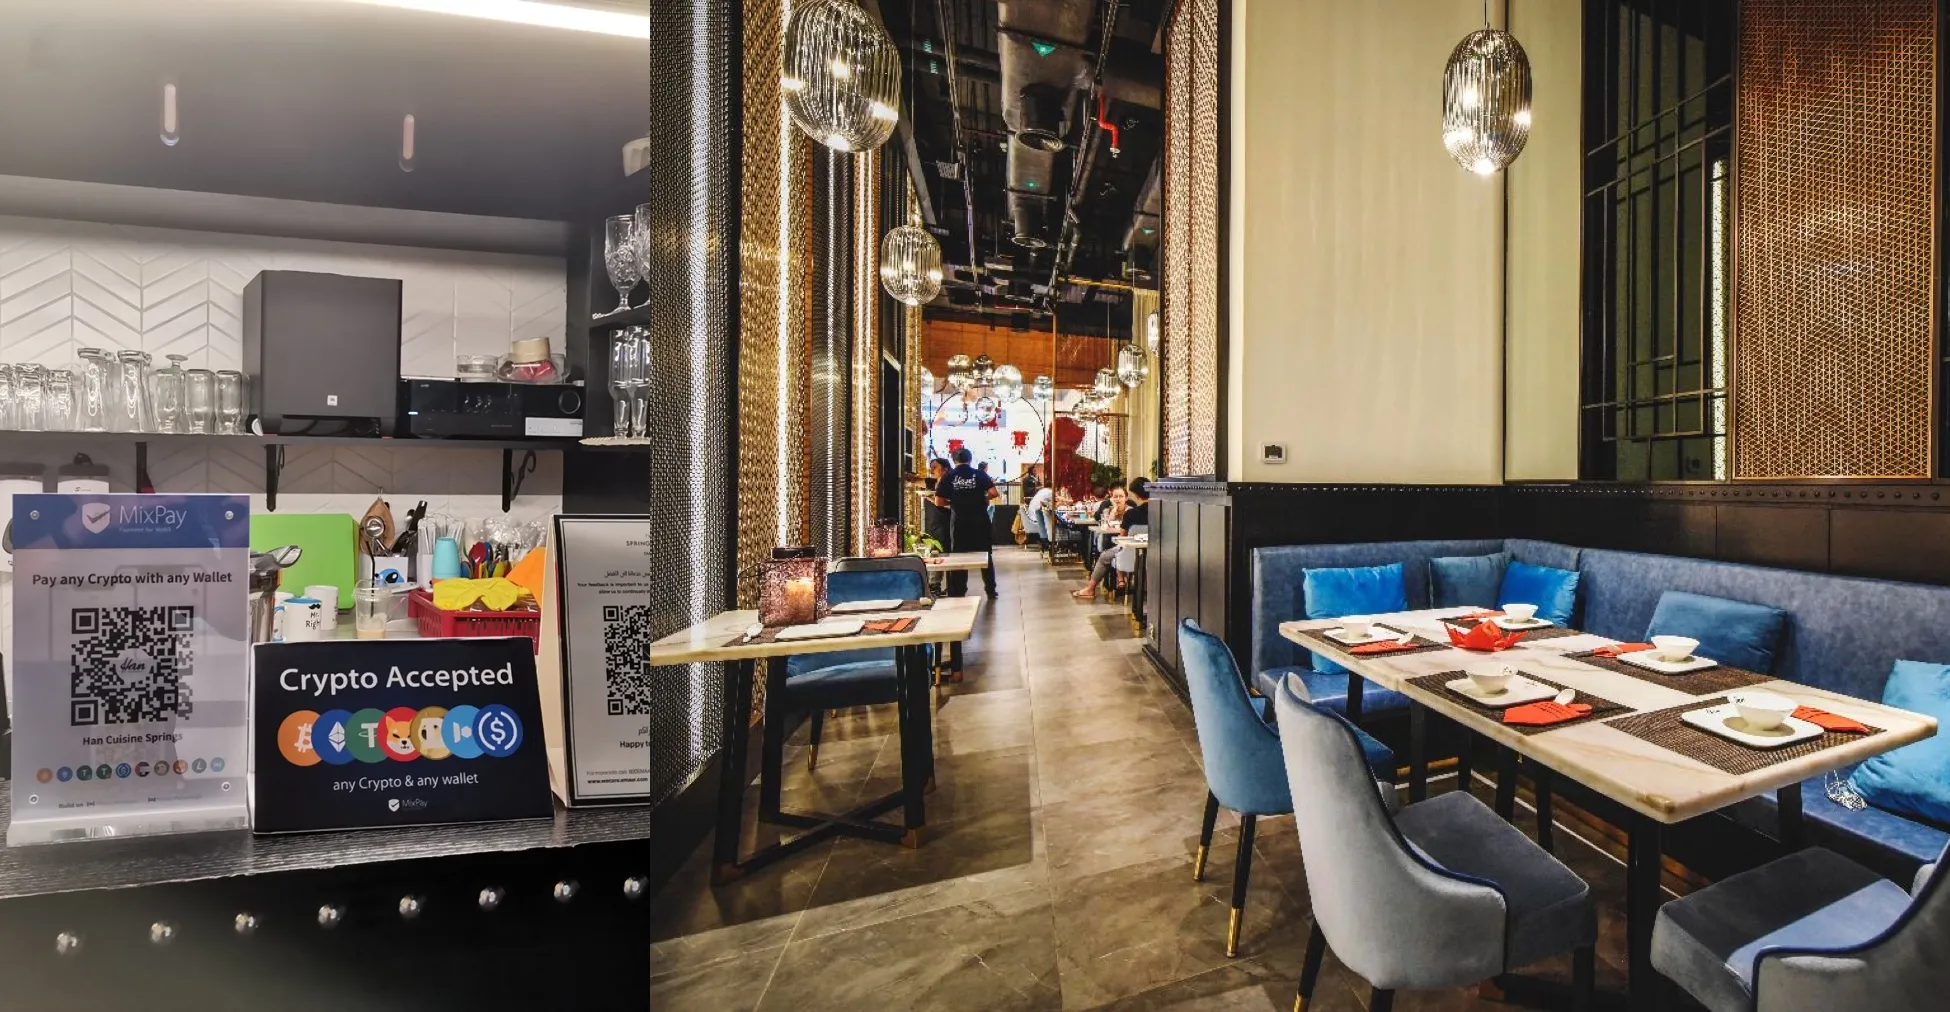 Han Cuisine Restaurant e MixPay chegaram a uma parceria estratégica